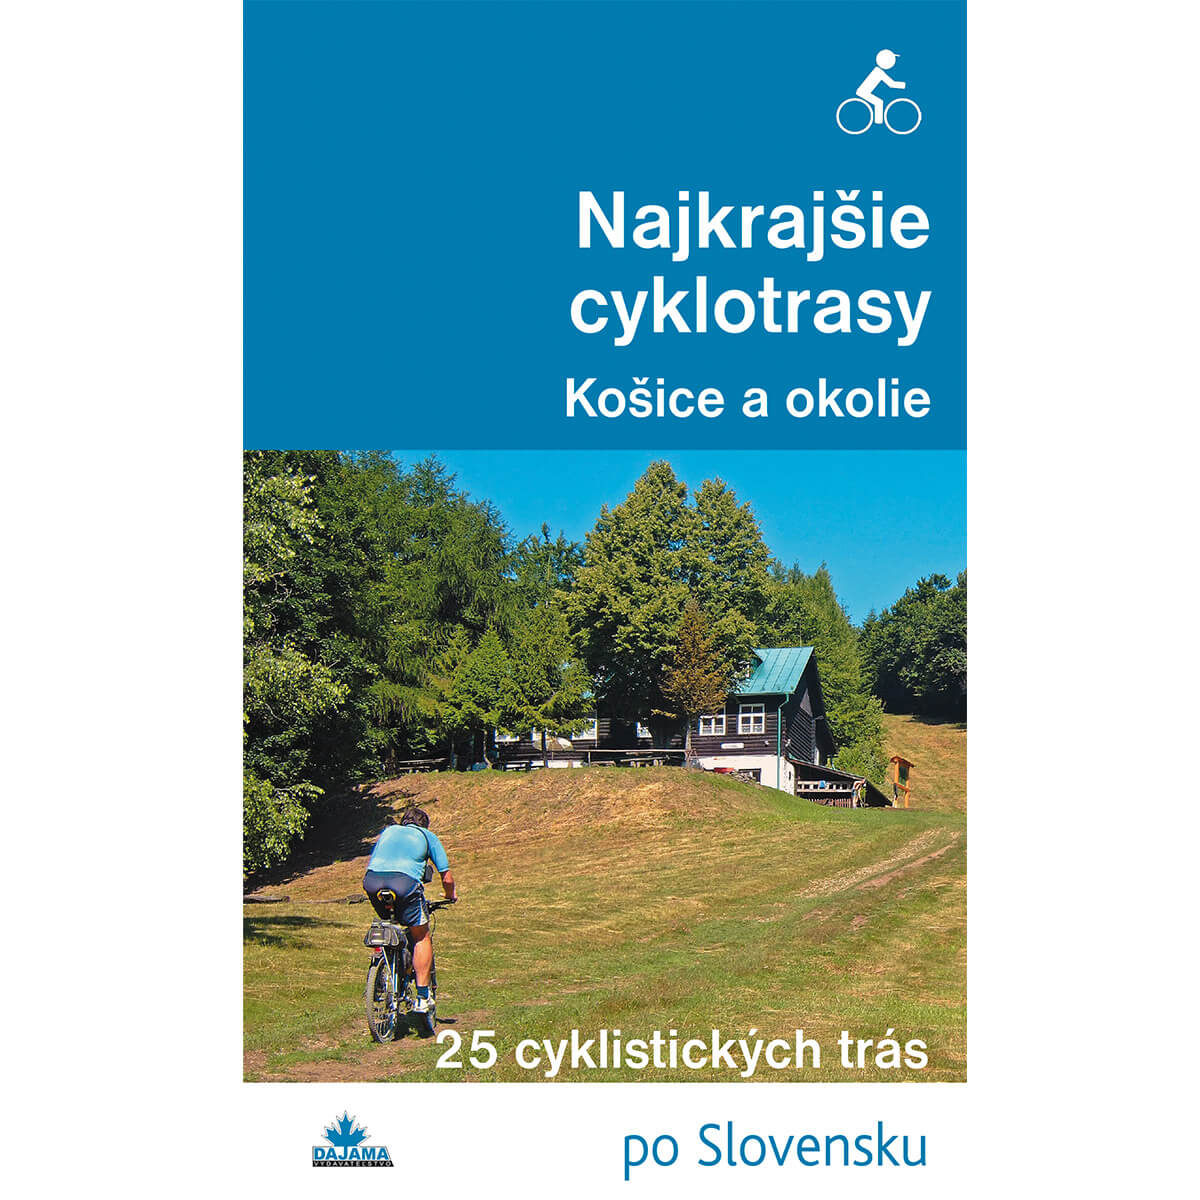 Kniha Najkrajšie cyklotrasy Košice a okolie - 25 cyklistických trás po Slovensku z vydavateľstva Dajama